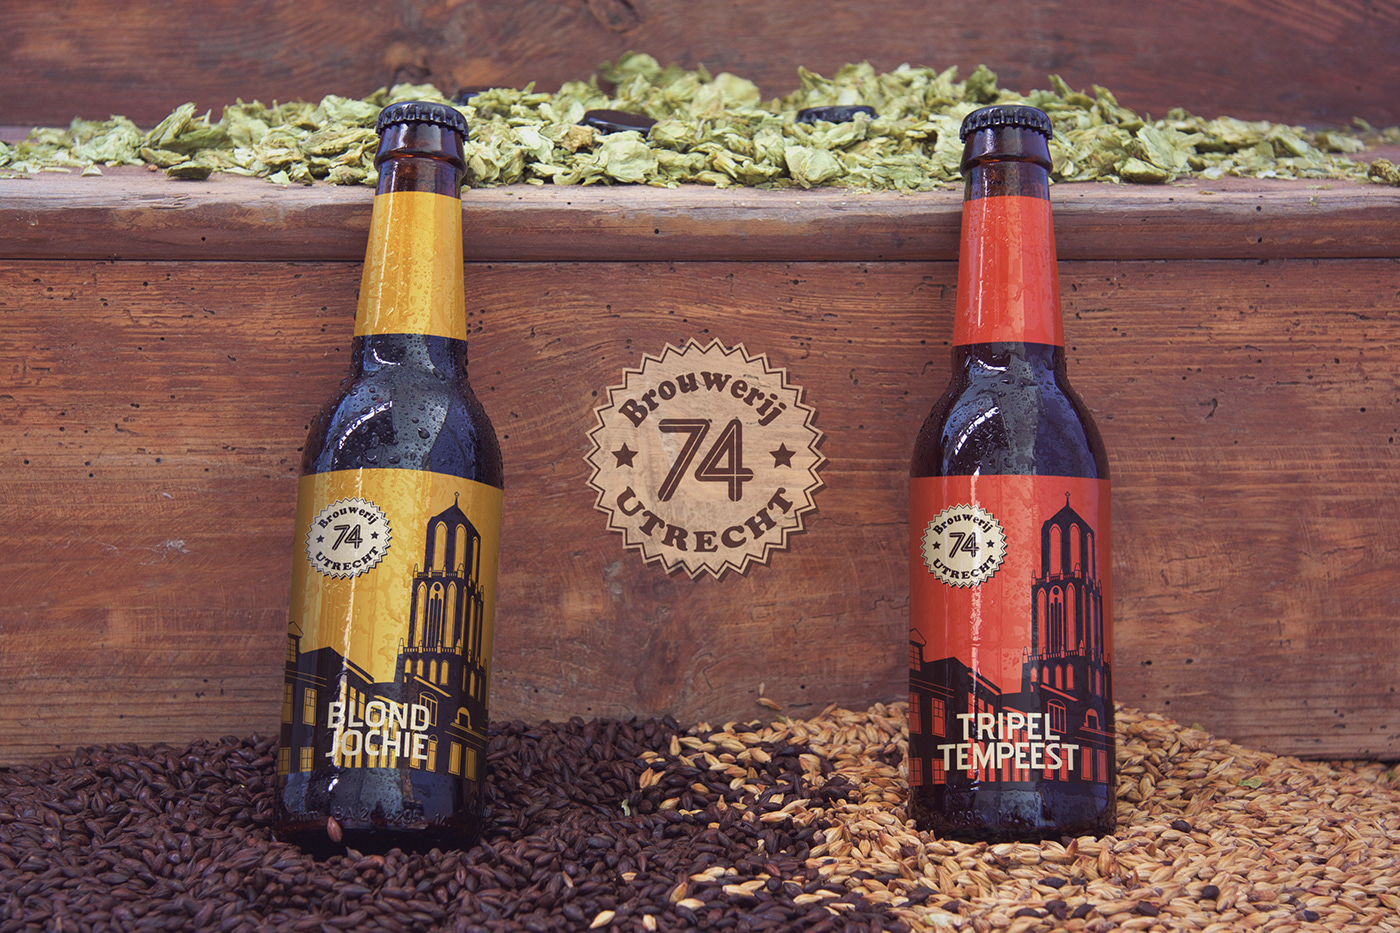 ontwerp grafisch vormgeving design beer label utrecht brewery